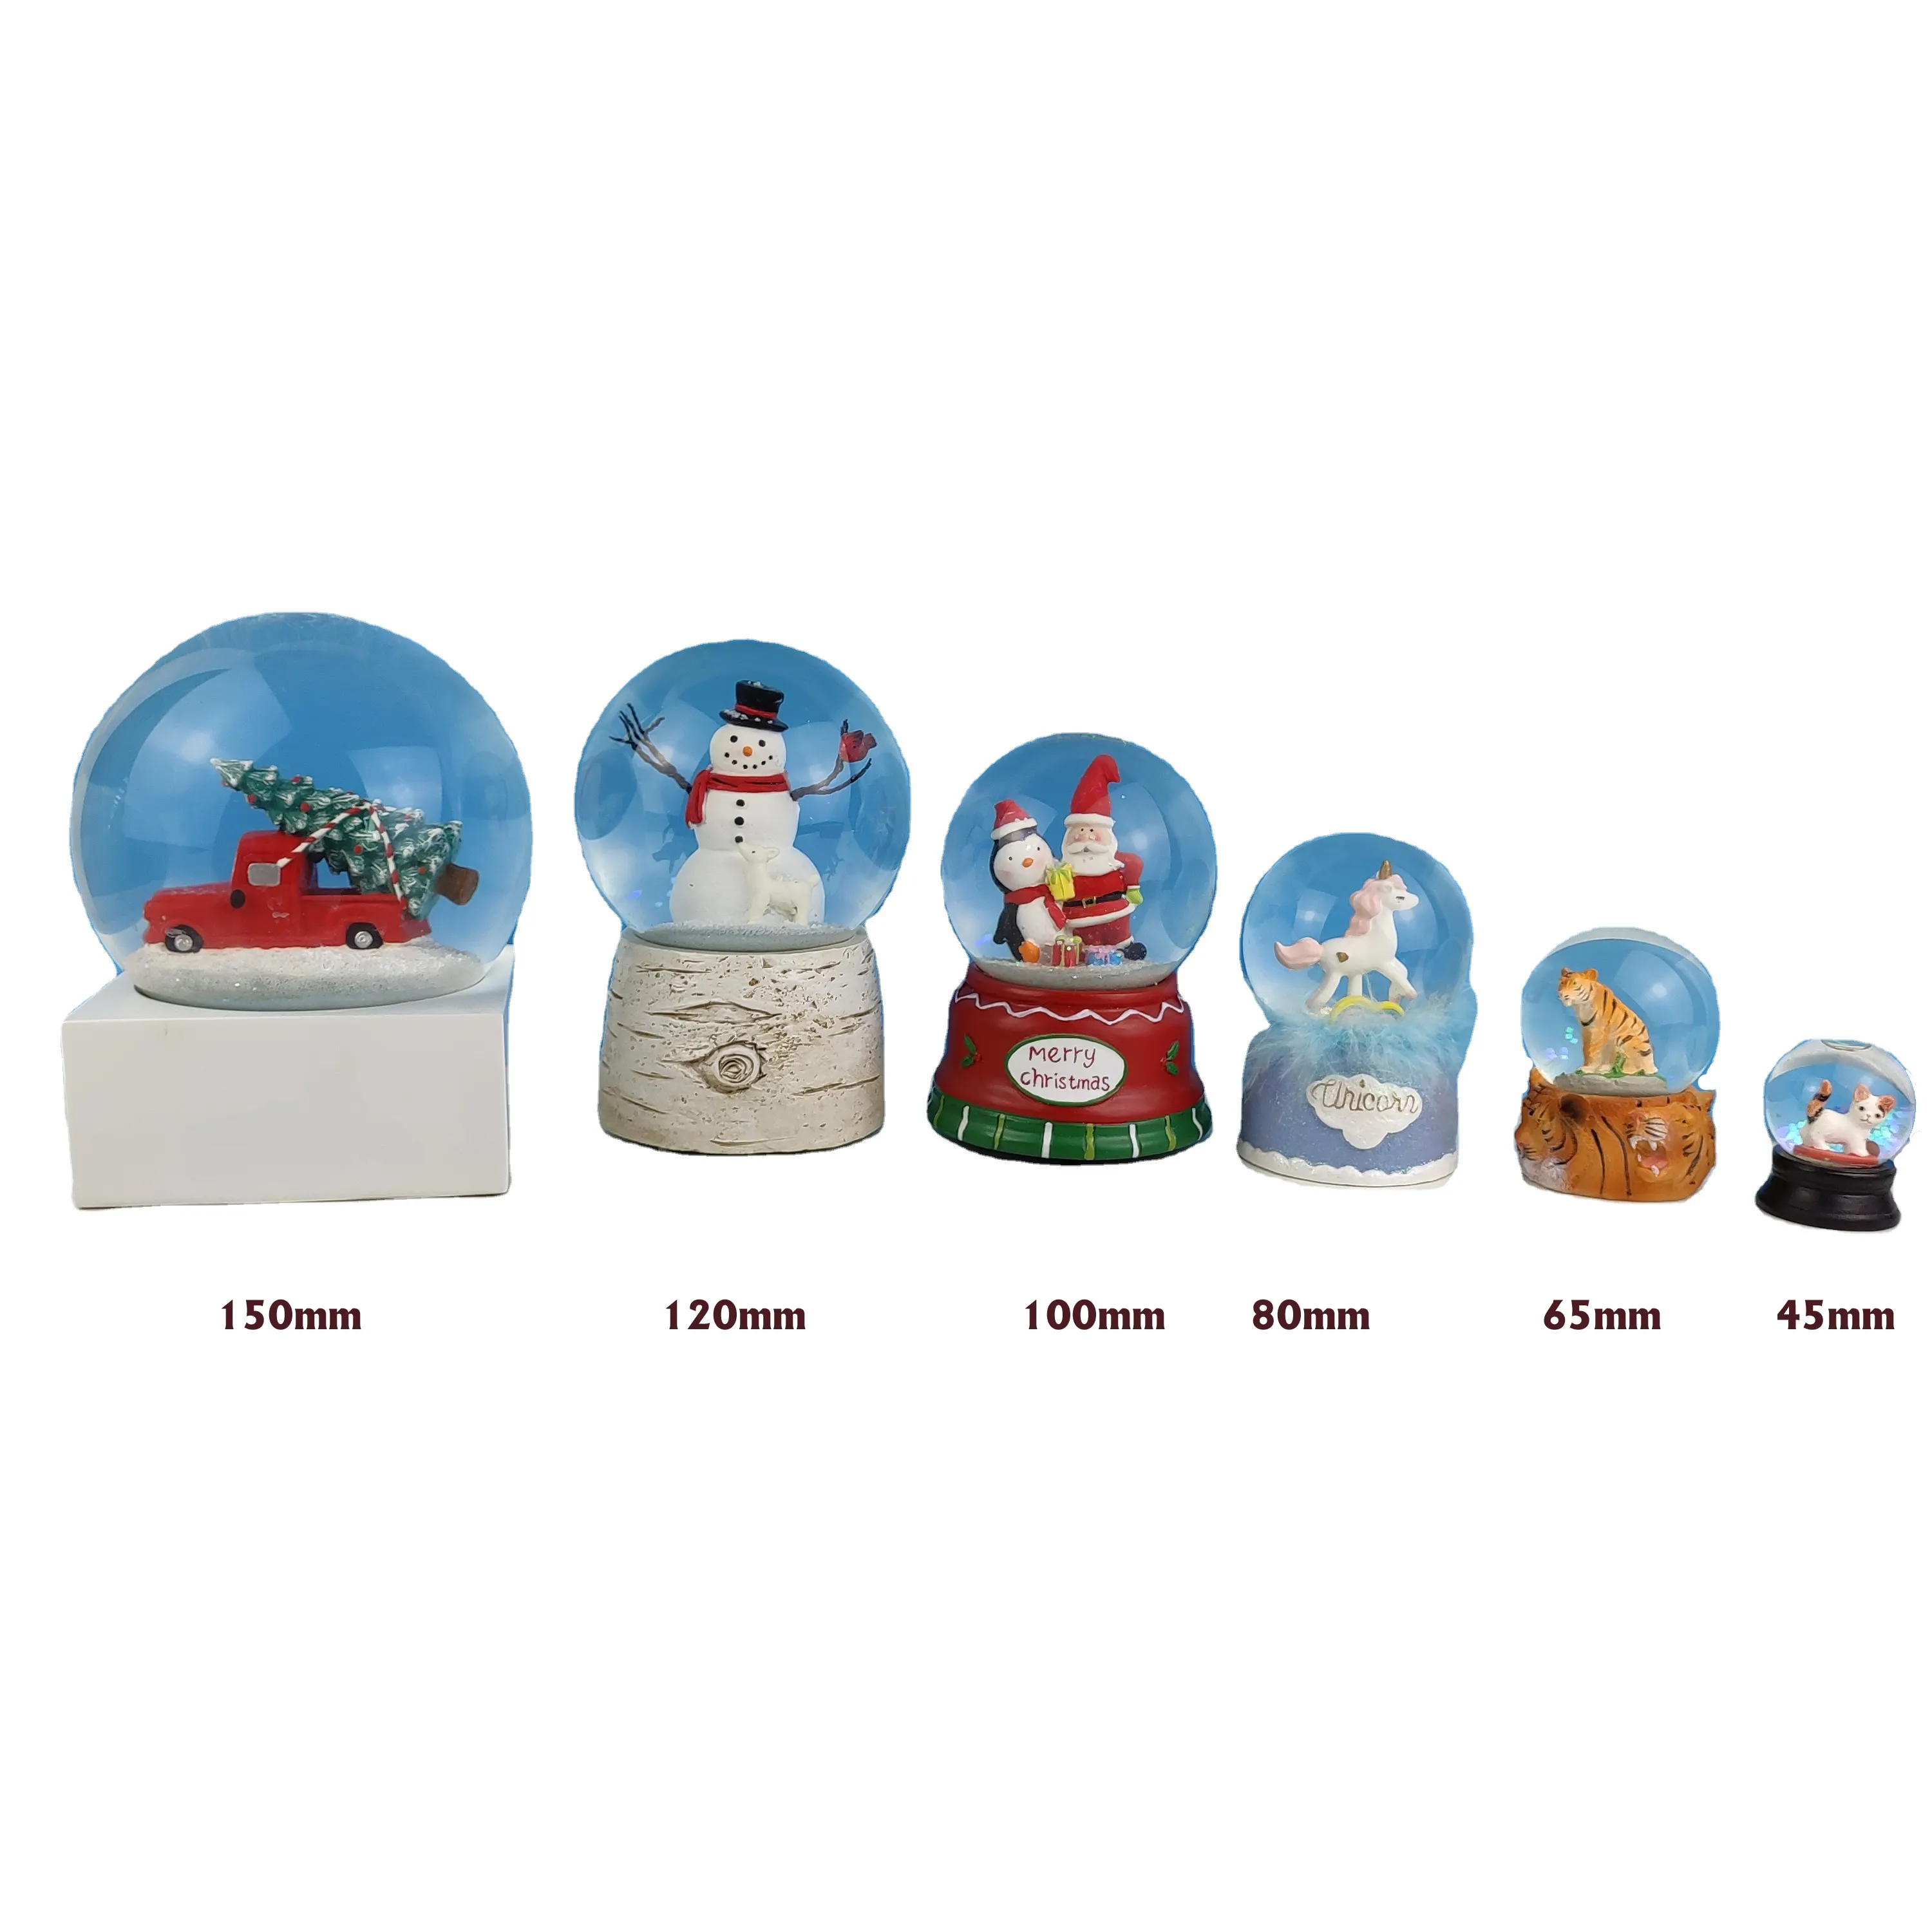 Globi di neve in resina personalizzati, globo d'acqua di natale in poliresina dipinto a mano con musica, foto vuote personalizzate bicchiere globo di neve